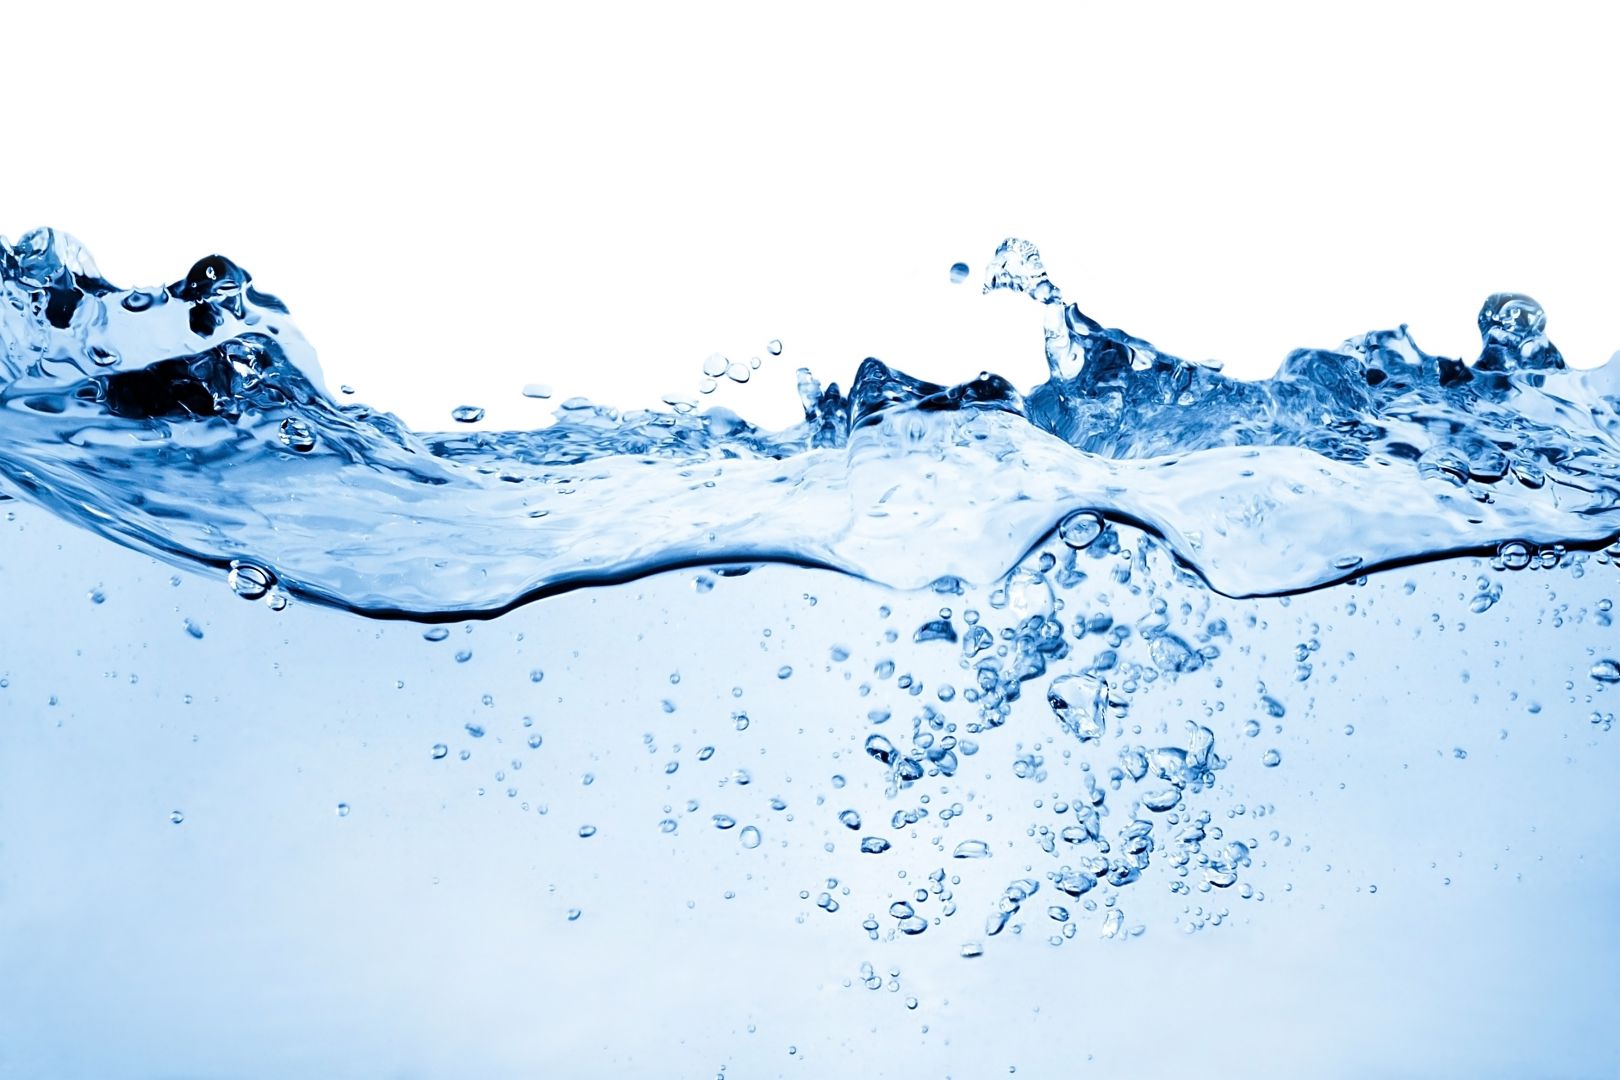 Poptávka na rozbor vody z kopané studny (Rozbory vody) - Nový Jičín